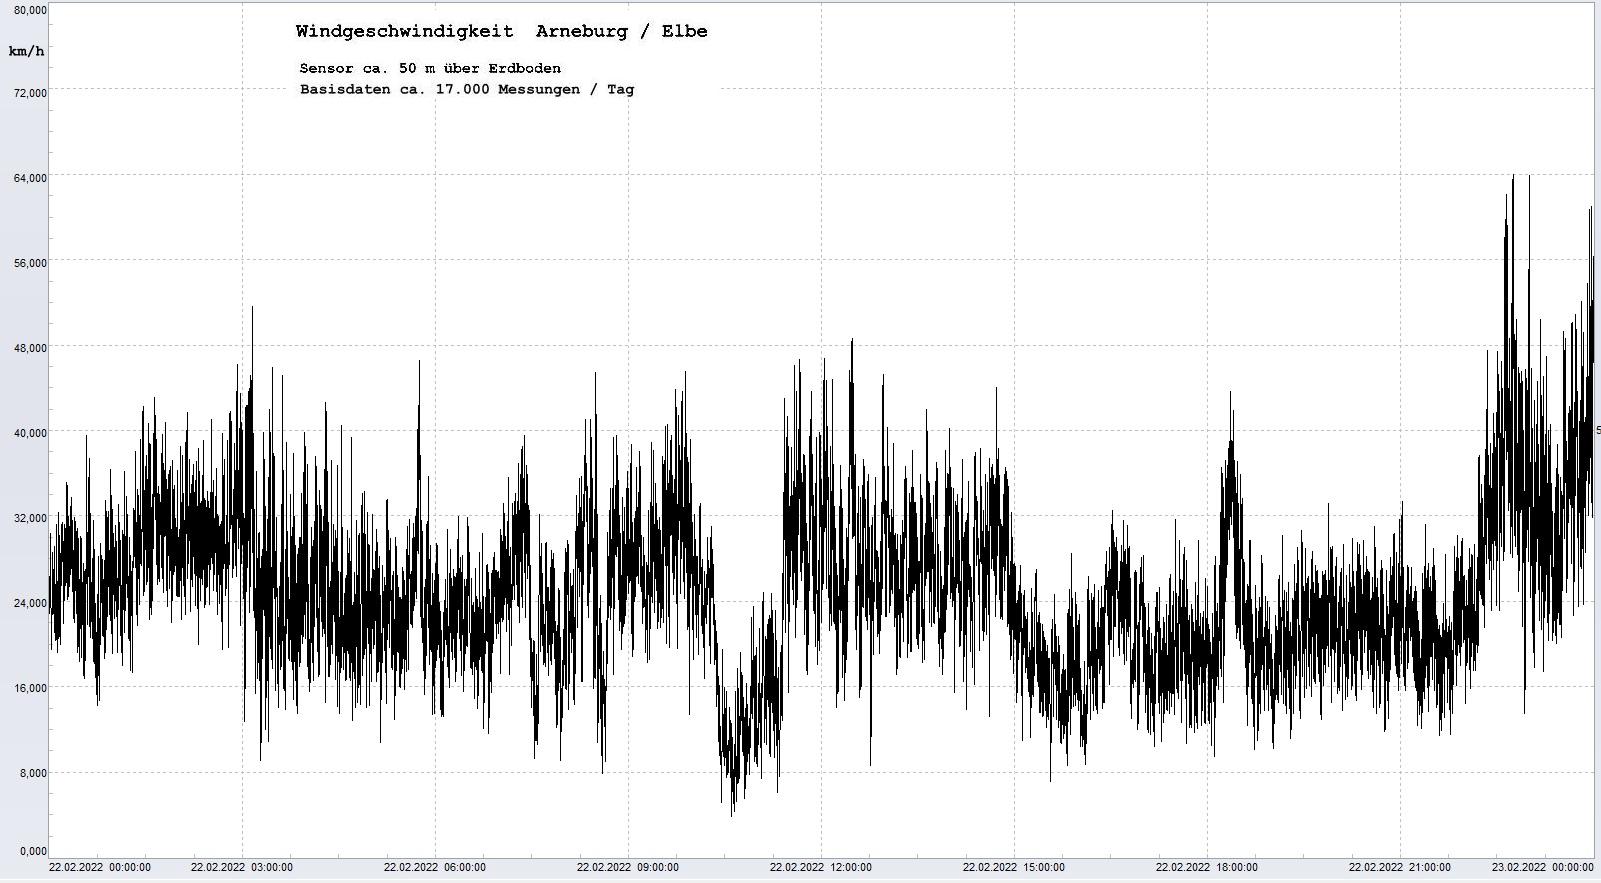 Arneburg Tages-Diagramm Winddaten, 22.02.2022
  Diagramm, Sensor auf Gebäude, ca. 50 m über Erdboden, Basis: 5s-Aufzeichnung